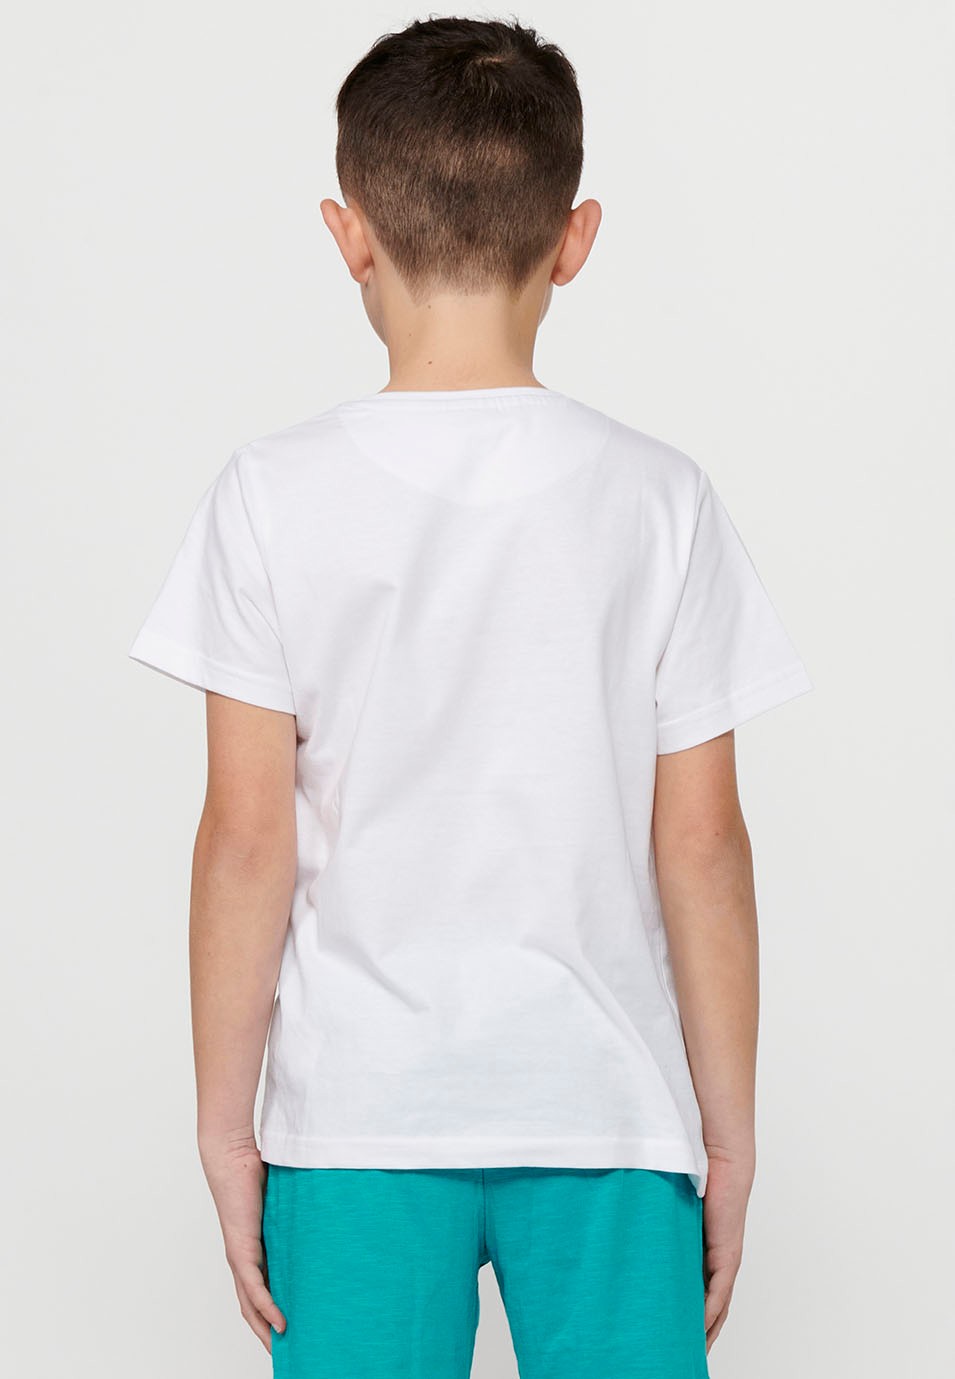 T-shirt en coton à manches courtes et encolure ronde. Imprimé blanc sur le devant pour garçon